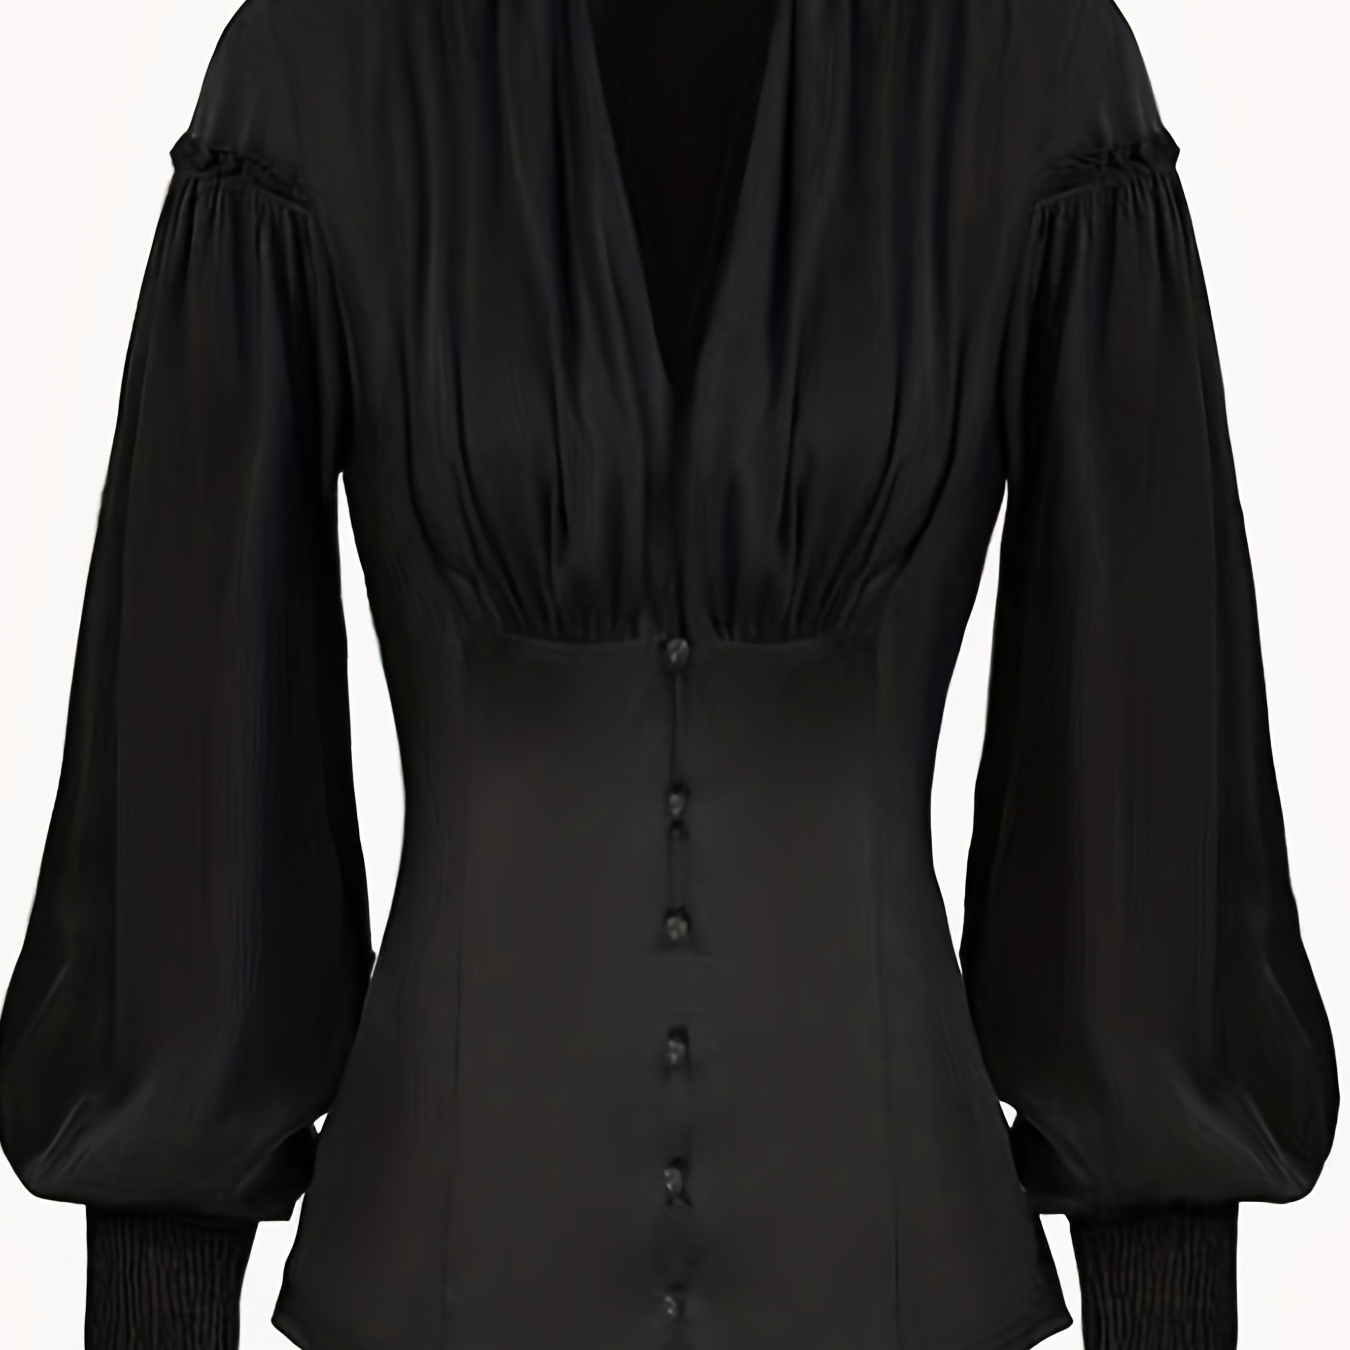 

Ruched V Neck Tunic Blouse, Stylish Shirred Lantern Sleeve Victorian Blouse, Women's Clothing